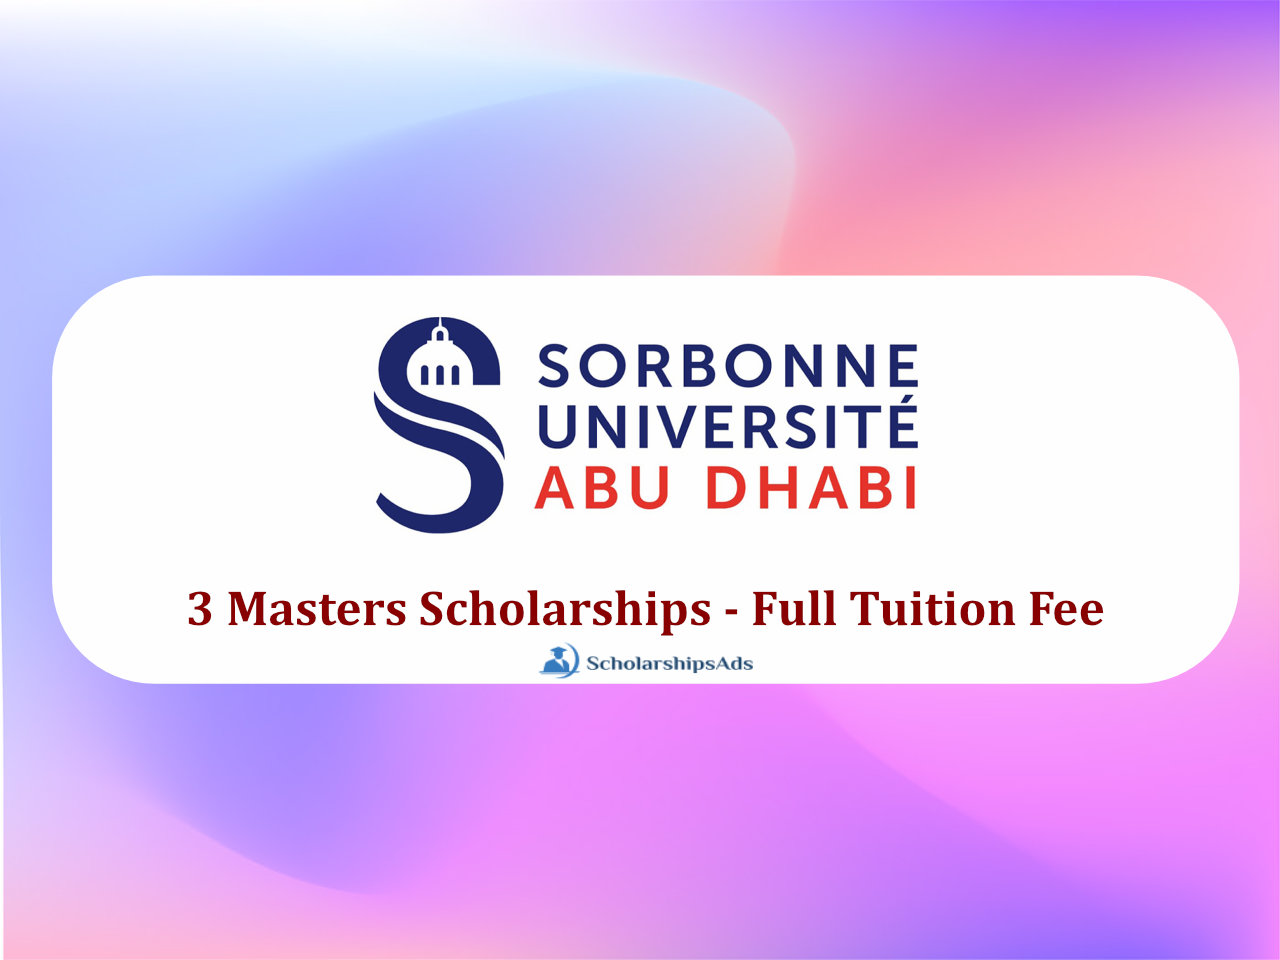 Sorbonne University Abu Dhabi Masters Scholarships.